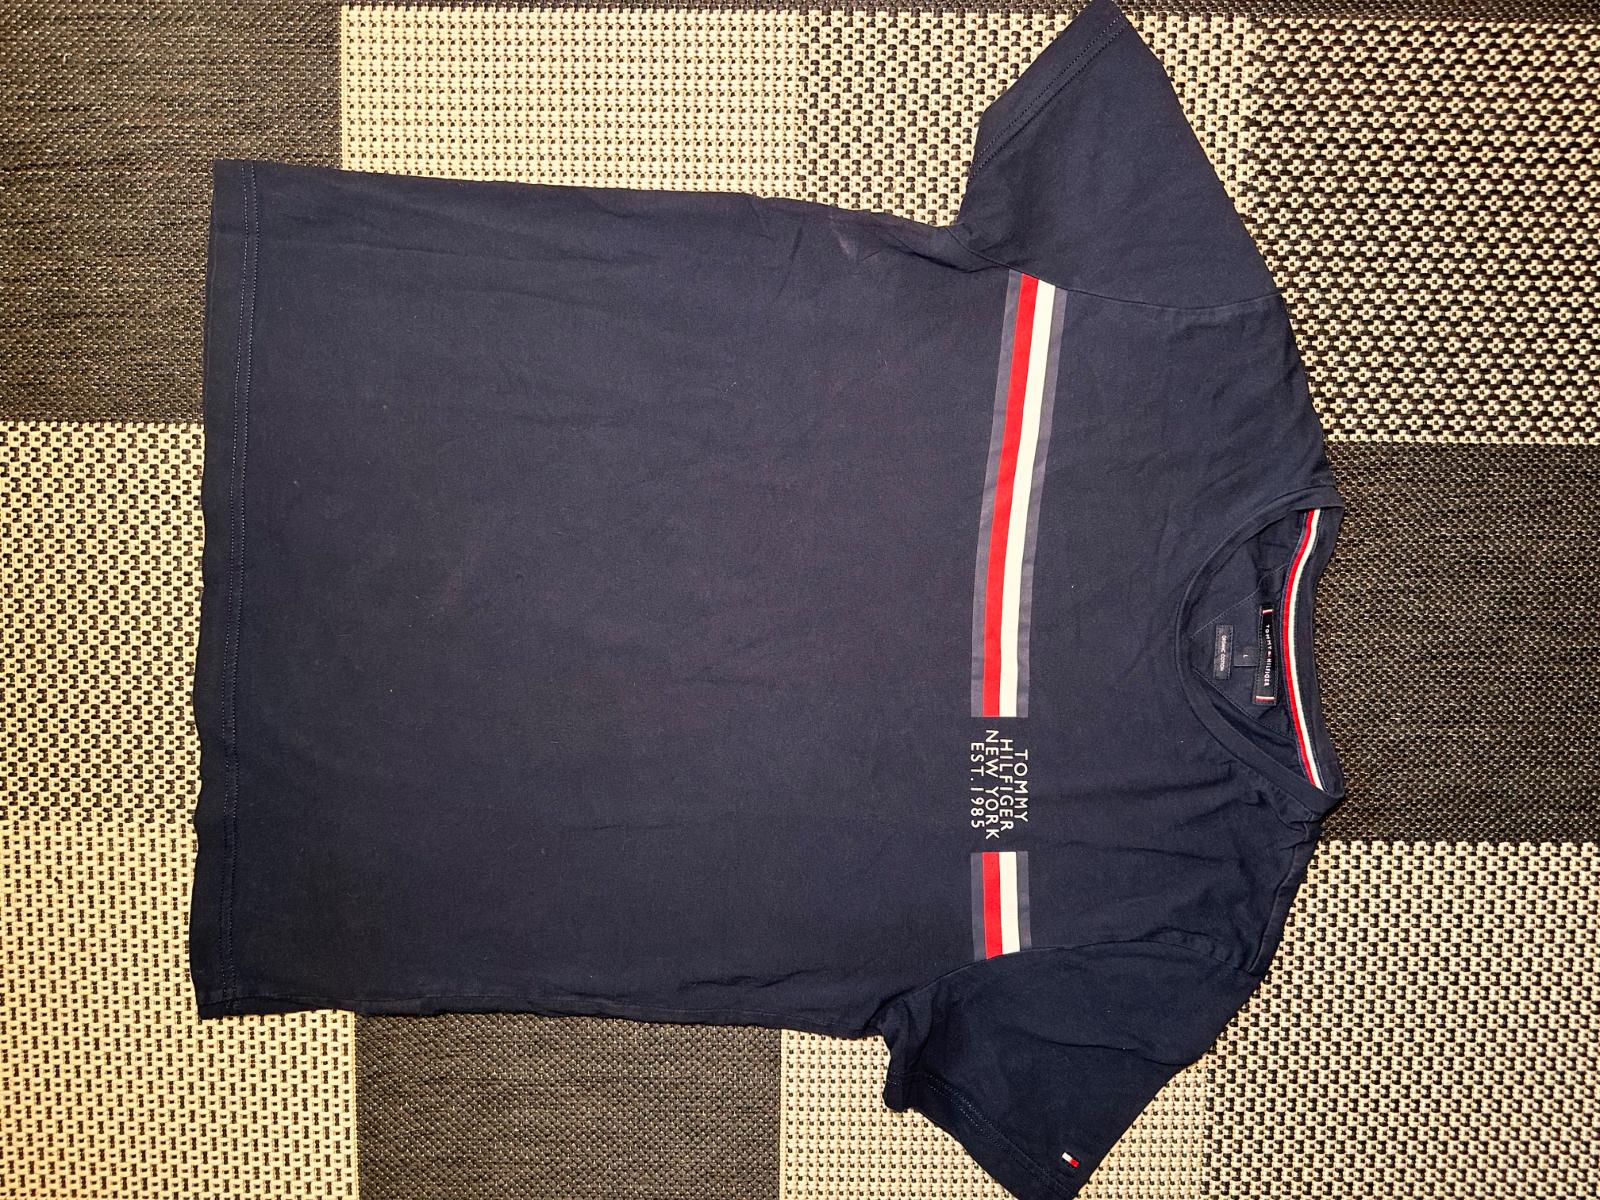 Pánske tričko Tommy Hilfiger, veľkosť L - Pánske oblečenie